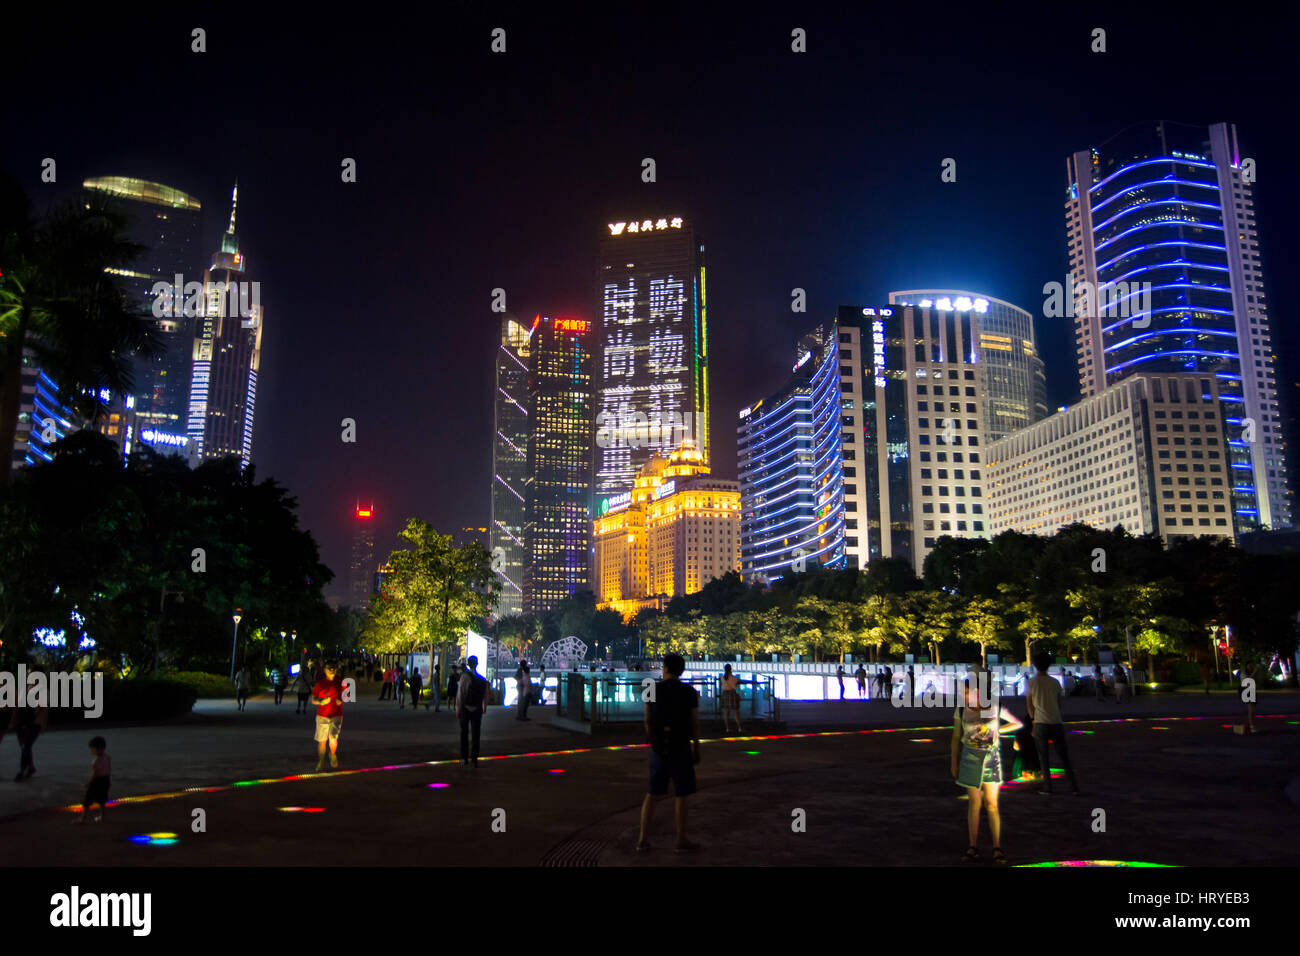 GUANGZHOU, CHINA - Septiembre 13, 2016: Guangzhou moderno distrito central de la ciudad con la gente caminando en la ruta iluminada, vista nocturna Foto de stock